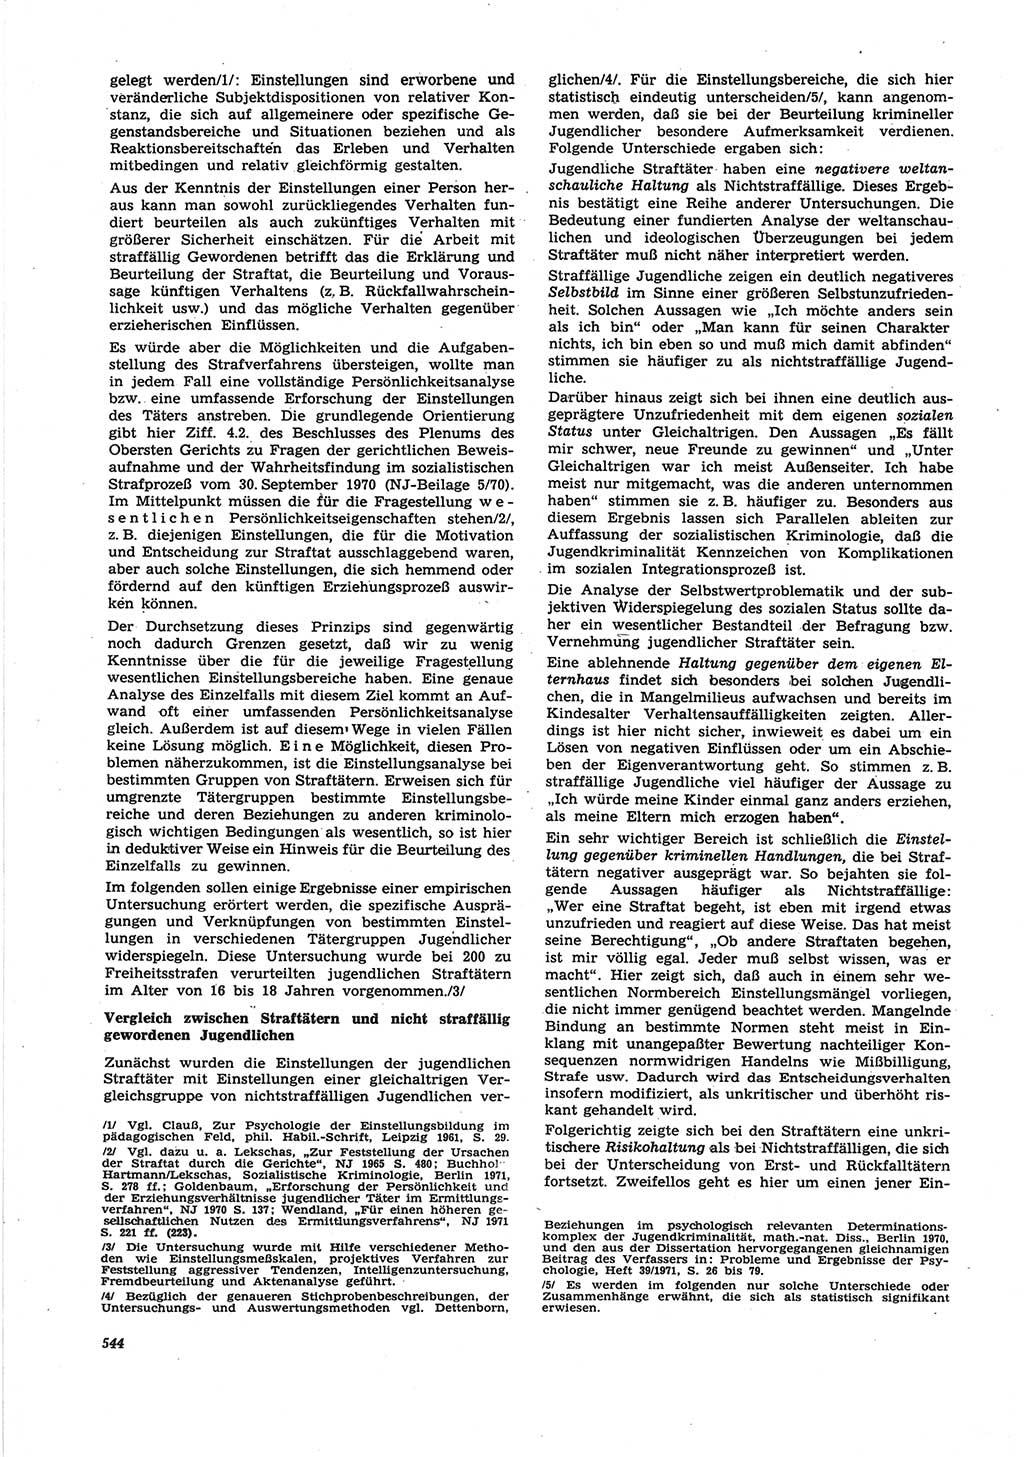 Neue Justiz (NJ), Zeitschrift für Recht und Rechtswissenschaft [Deutsche Demokratische Republik (DDR)], 25. Jahrgang 1971, Seite 544 (NJ DDR 1971, S. 544)